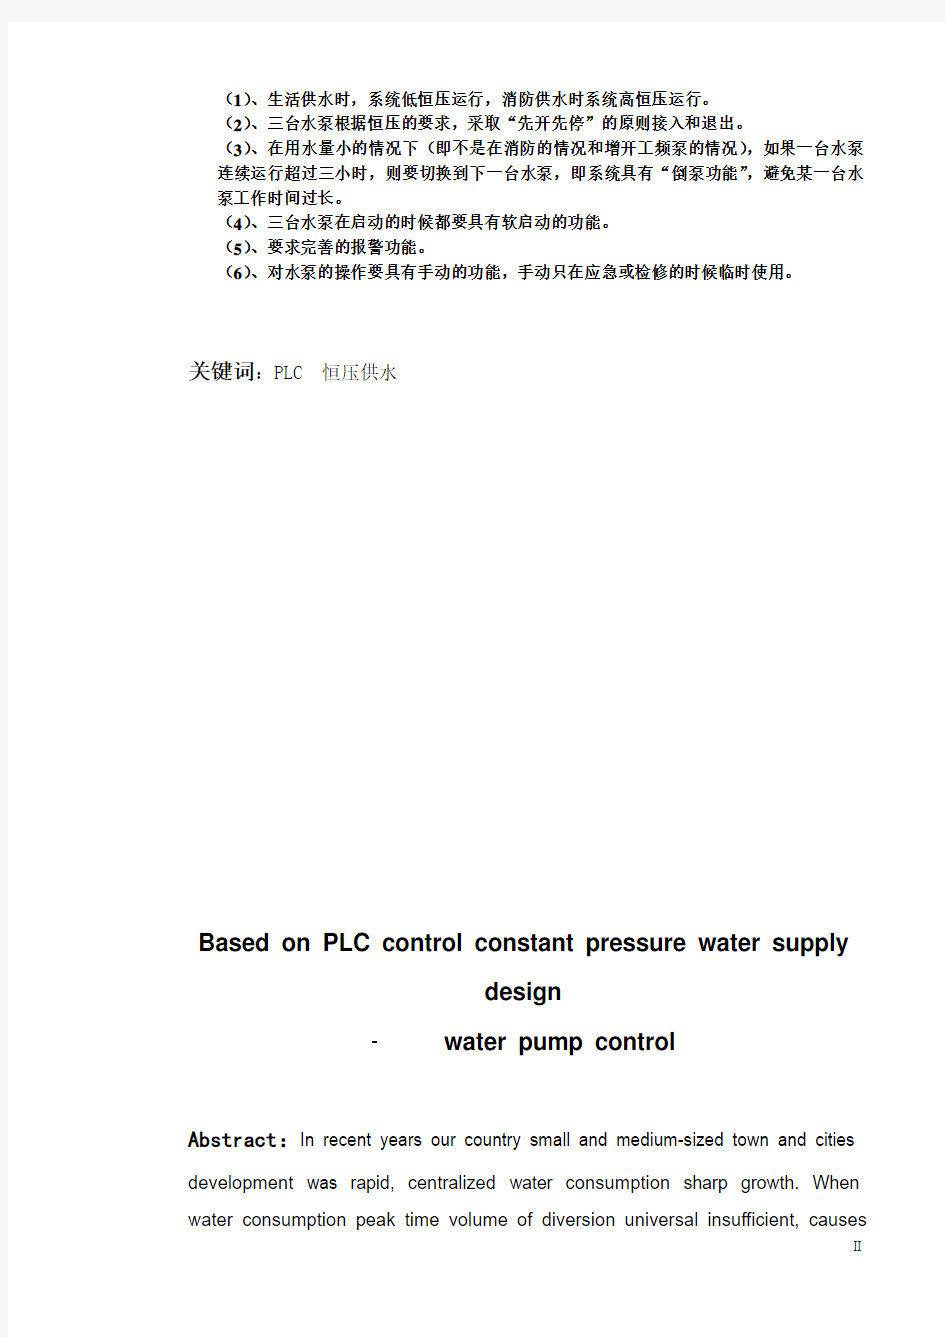 基于PLC控制恒压供水的设计水泵控制